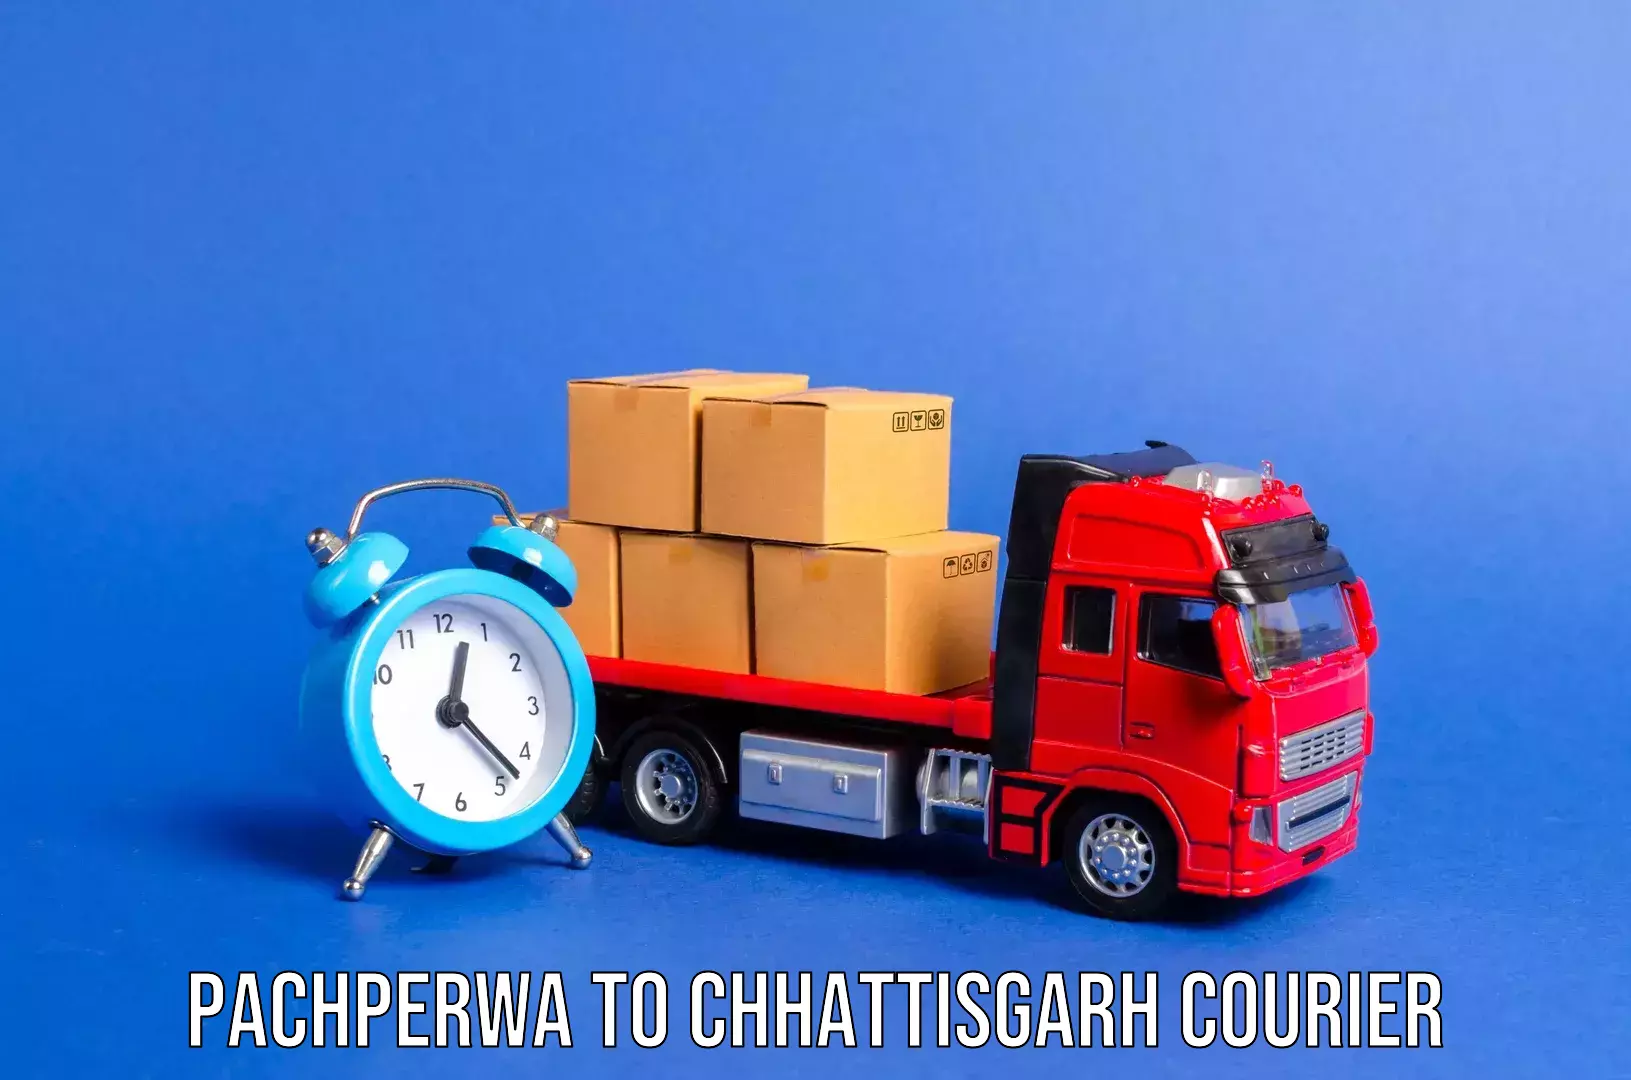 Luggage shipment specialists Pachperwa to Chhattisgarh